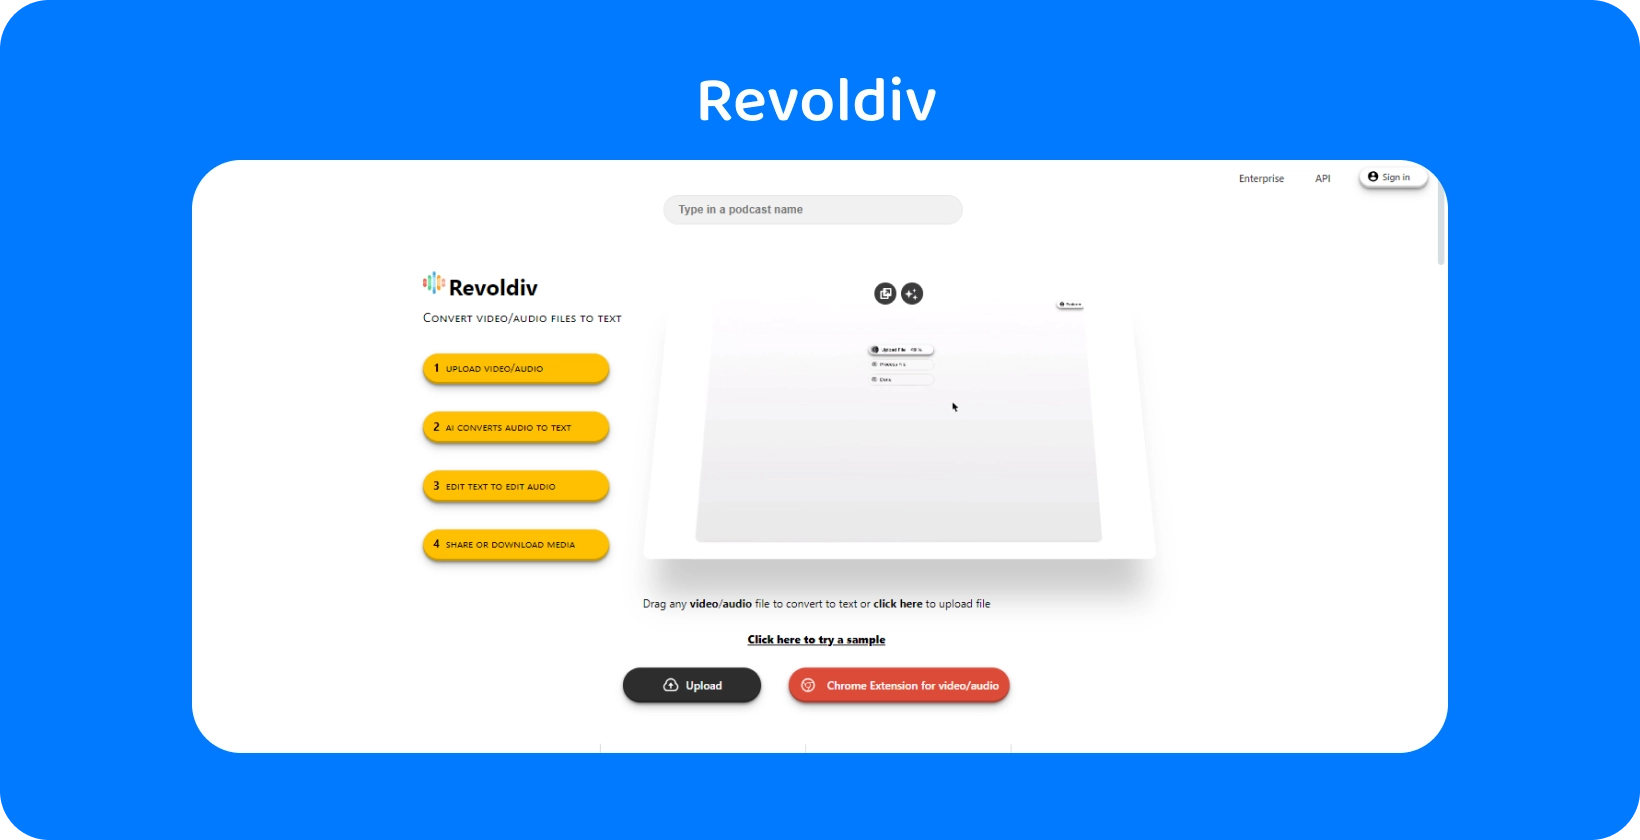 Revoldivovo elegantno web sučelje spremno za prijenos zvuka i pretvorbu u tekst, pokazujući jednostavnost i učinkovitost.